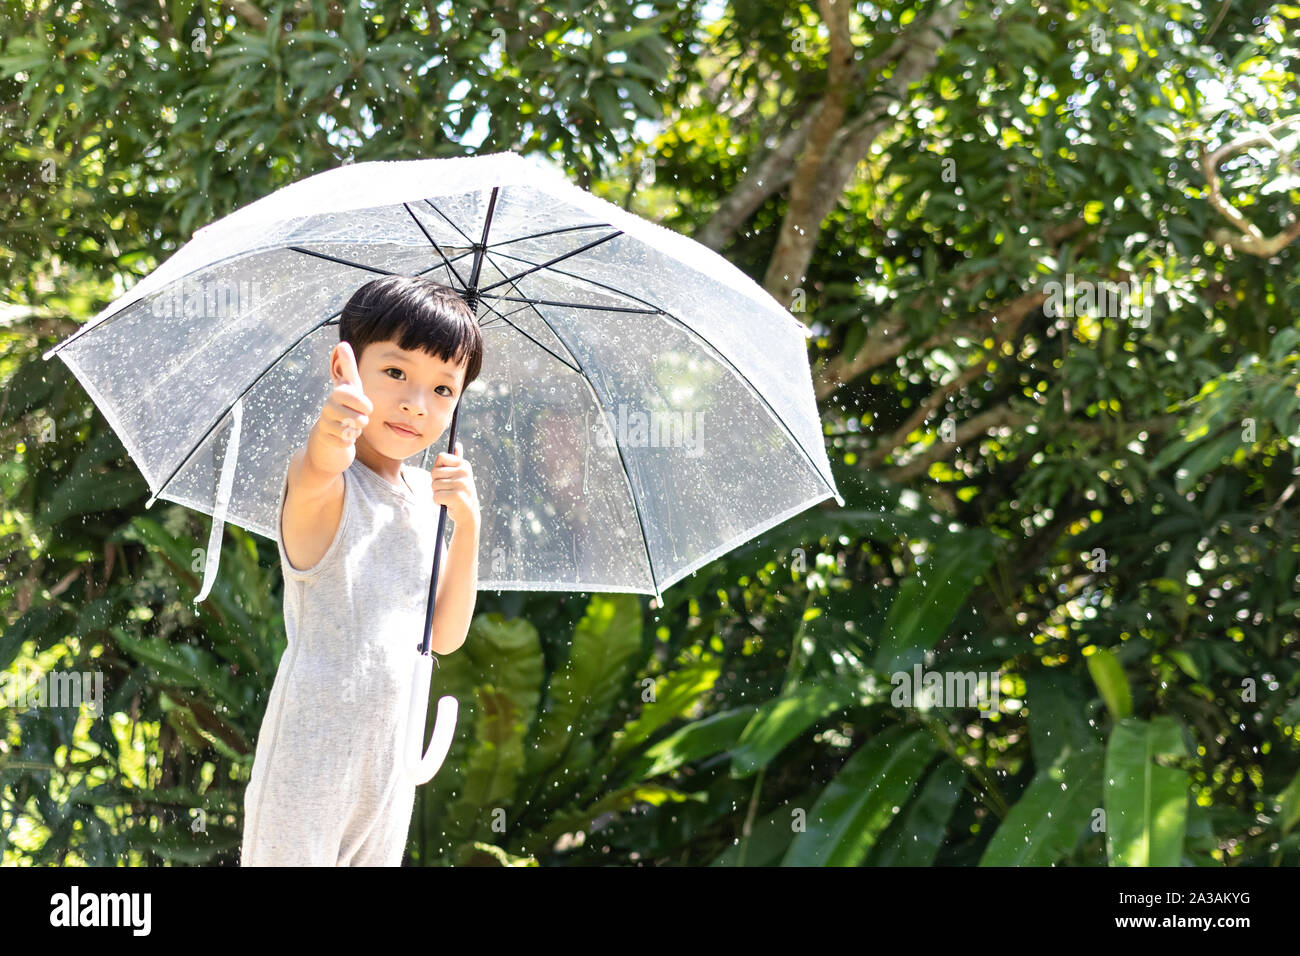 Kid mano sosteniendo paraguas jugando en la naturaleza al aire libre. Niñito escondido debajo de una sombrilla. cabrito feliz atrapando las gotas de lluvia. Feliz gracioso niño disfrute Foto de stock